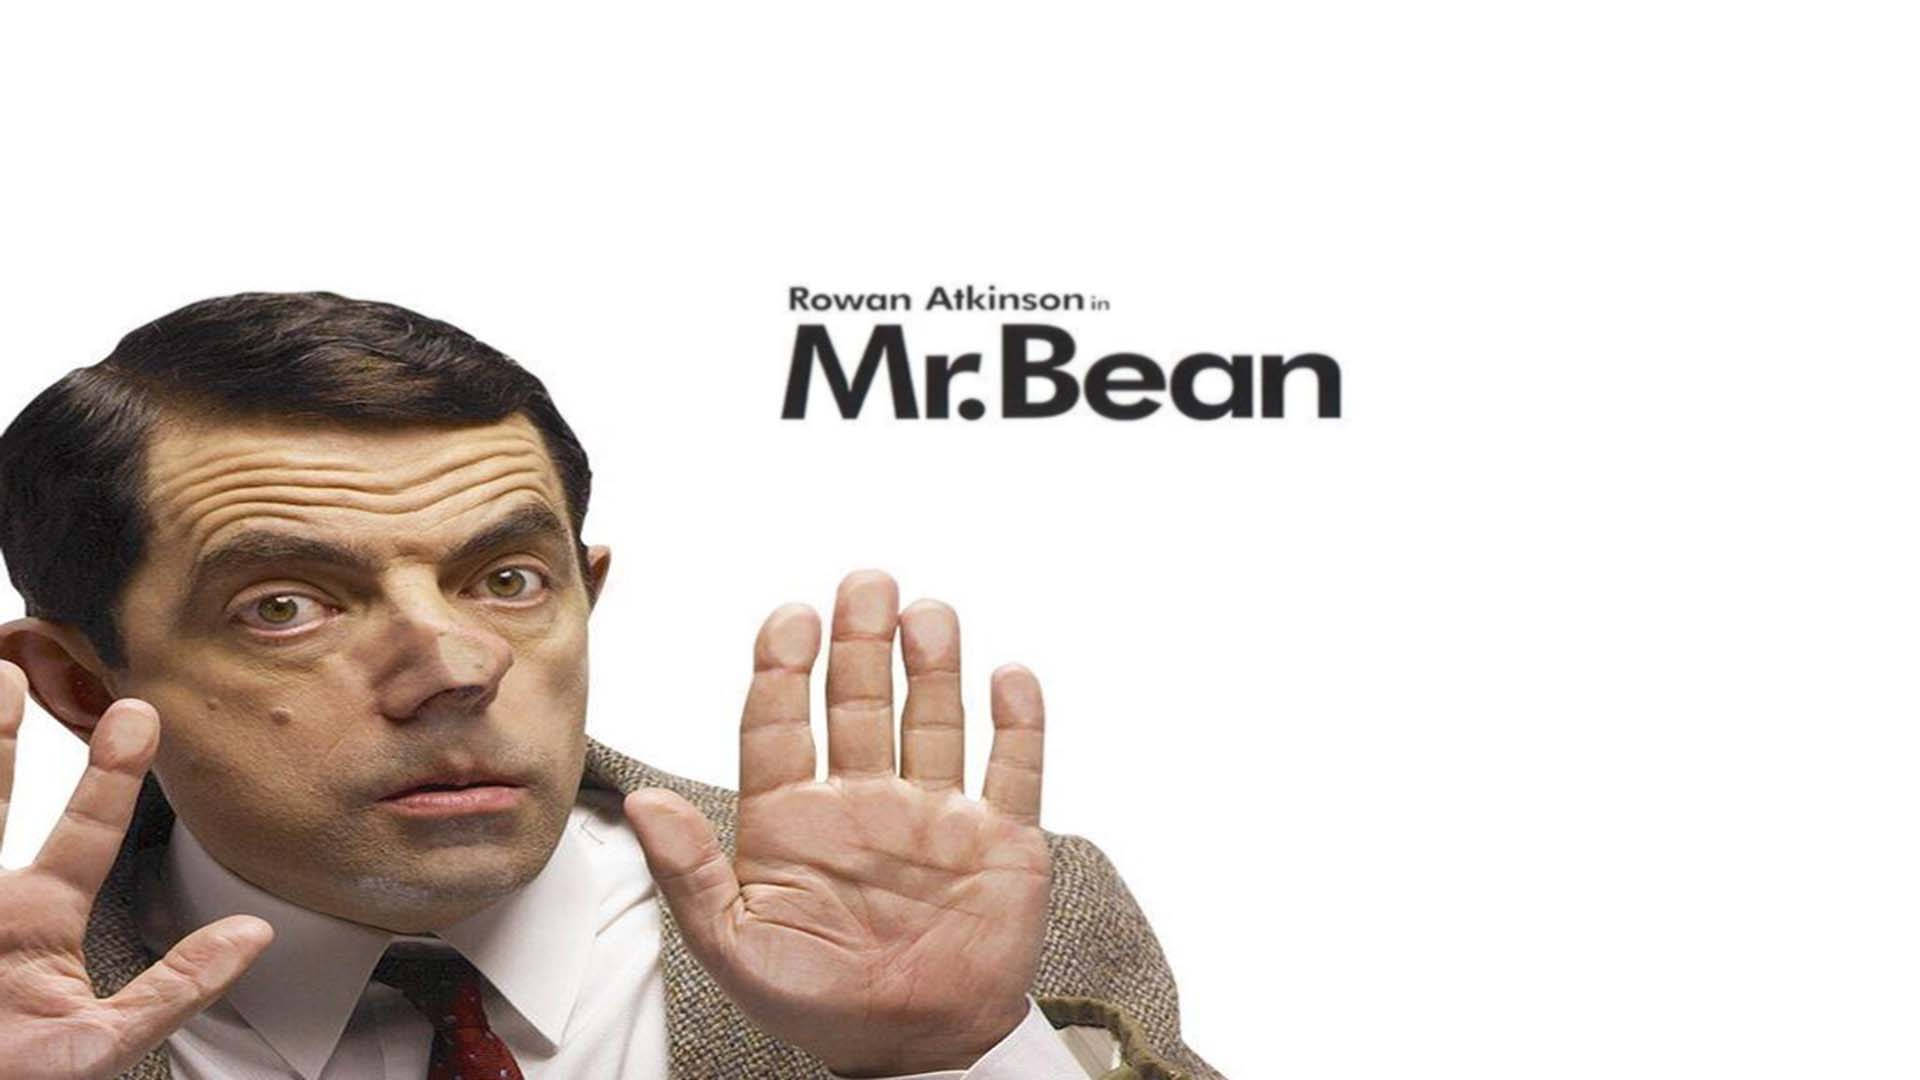 Mr. Bean Mirror Effect Poster Background